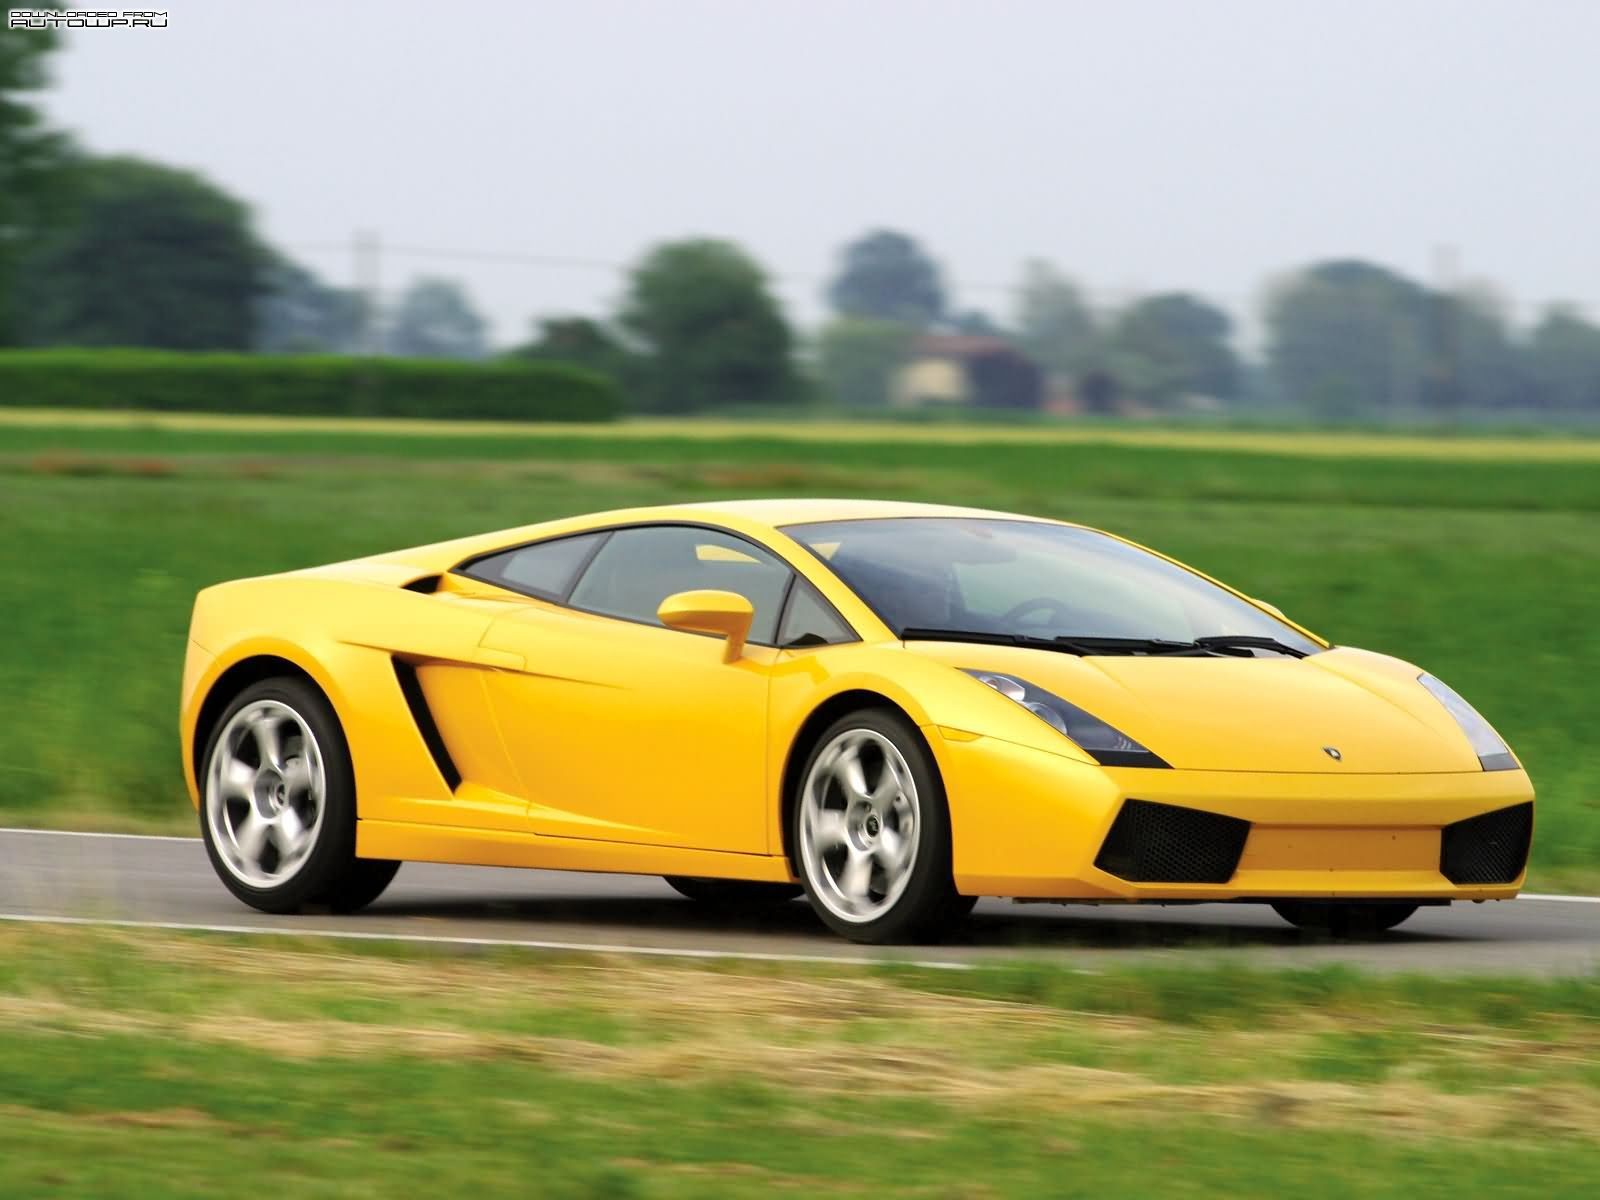 General 1600x1200 car yellow cars Lamborghini vehicle Lamborghini Gallardo italian cars Volkswagen Group